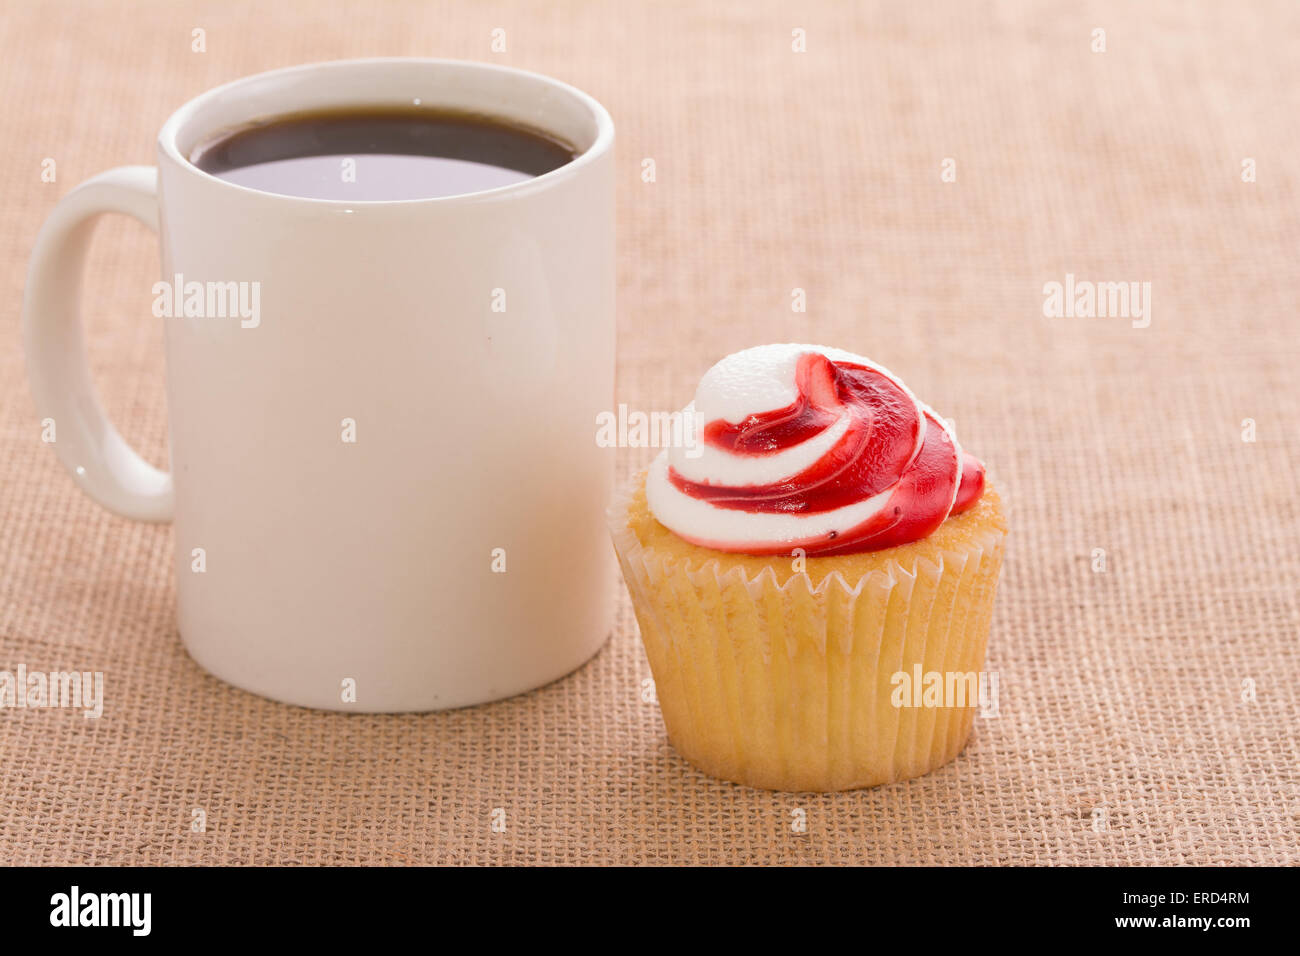 Tasse de café avec un petit gâteau aromatisé à la fraise, sur fond de toile Banque D'Images